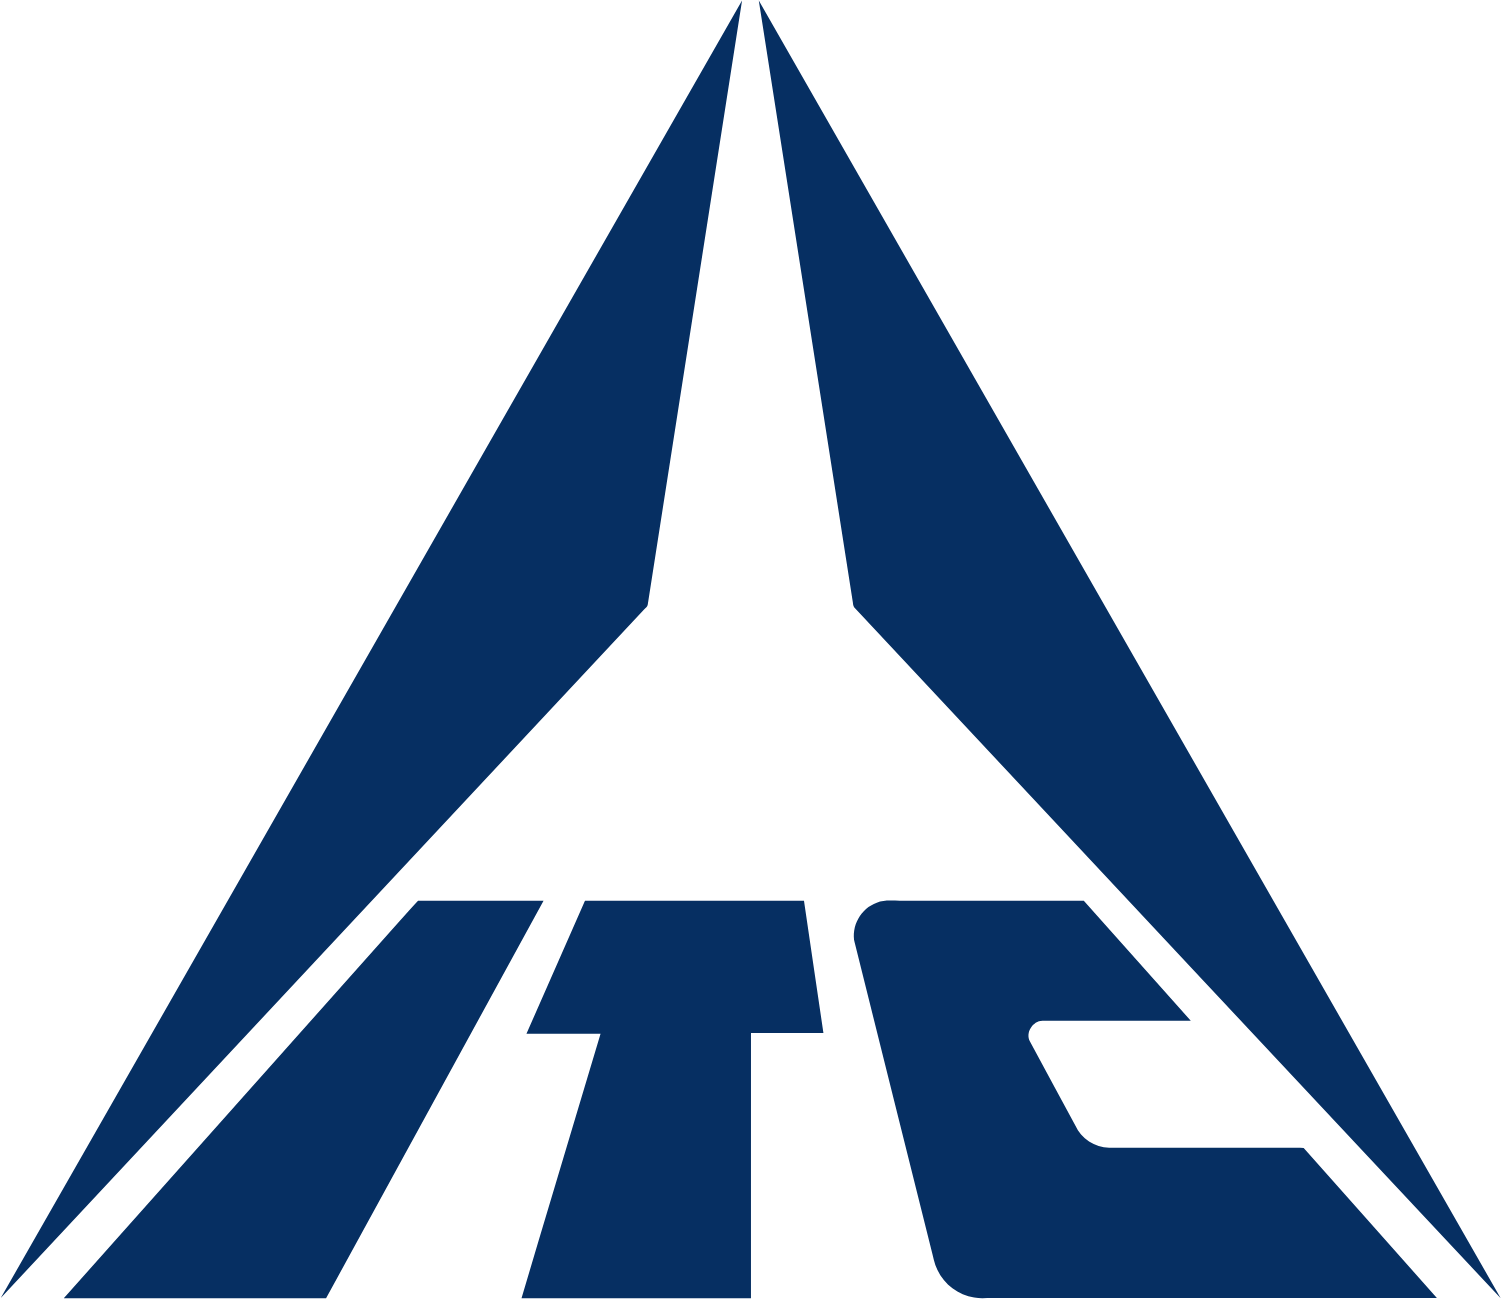 ITC logo (transparent PNG)